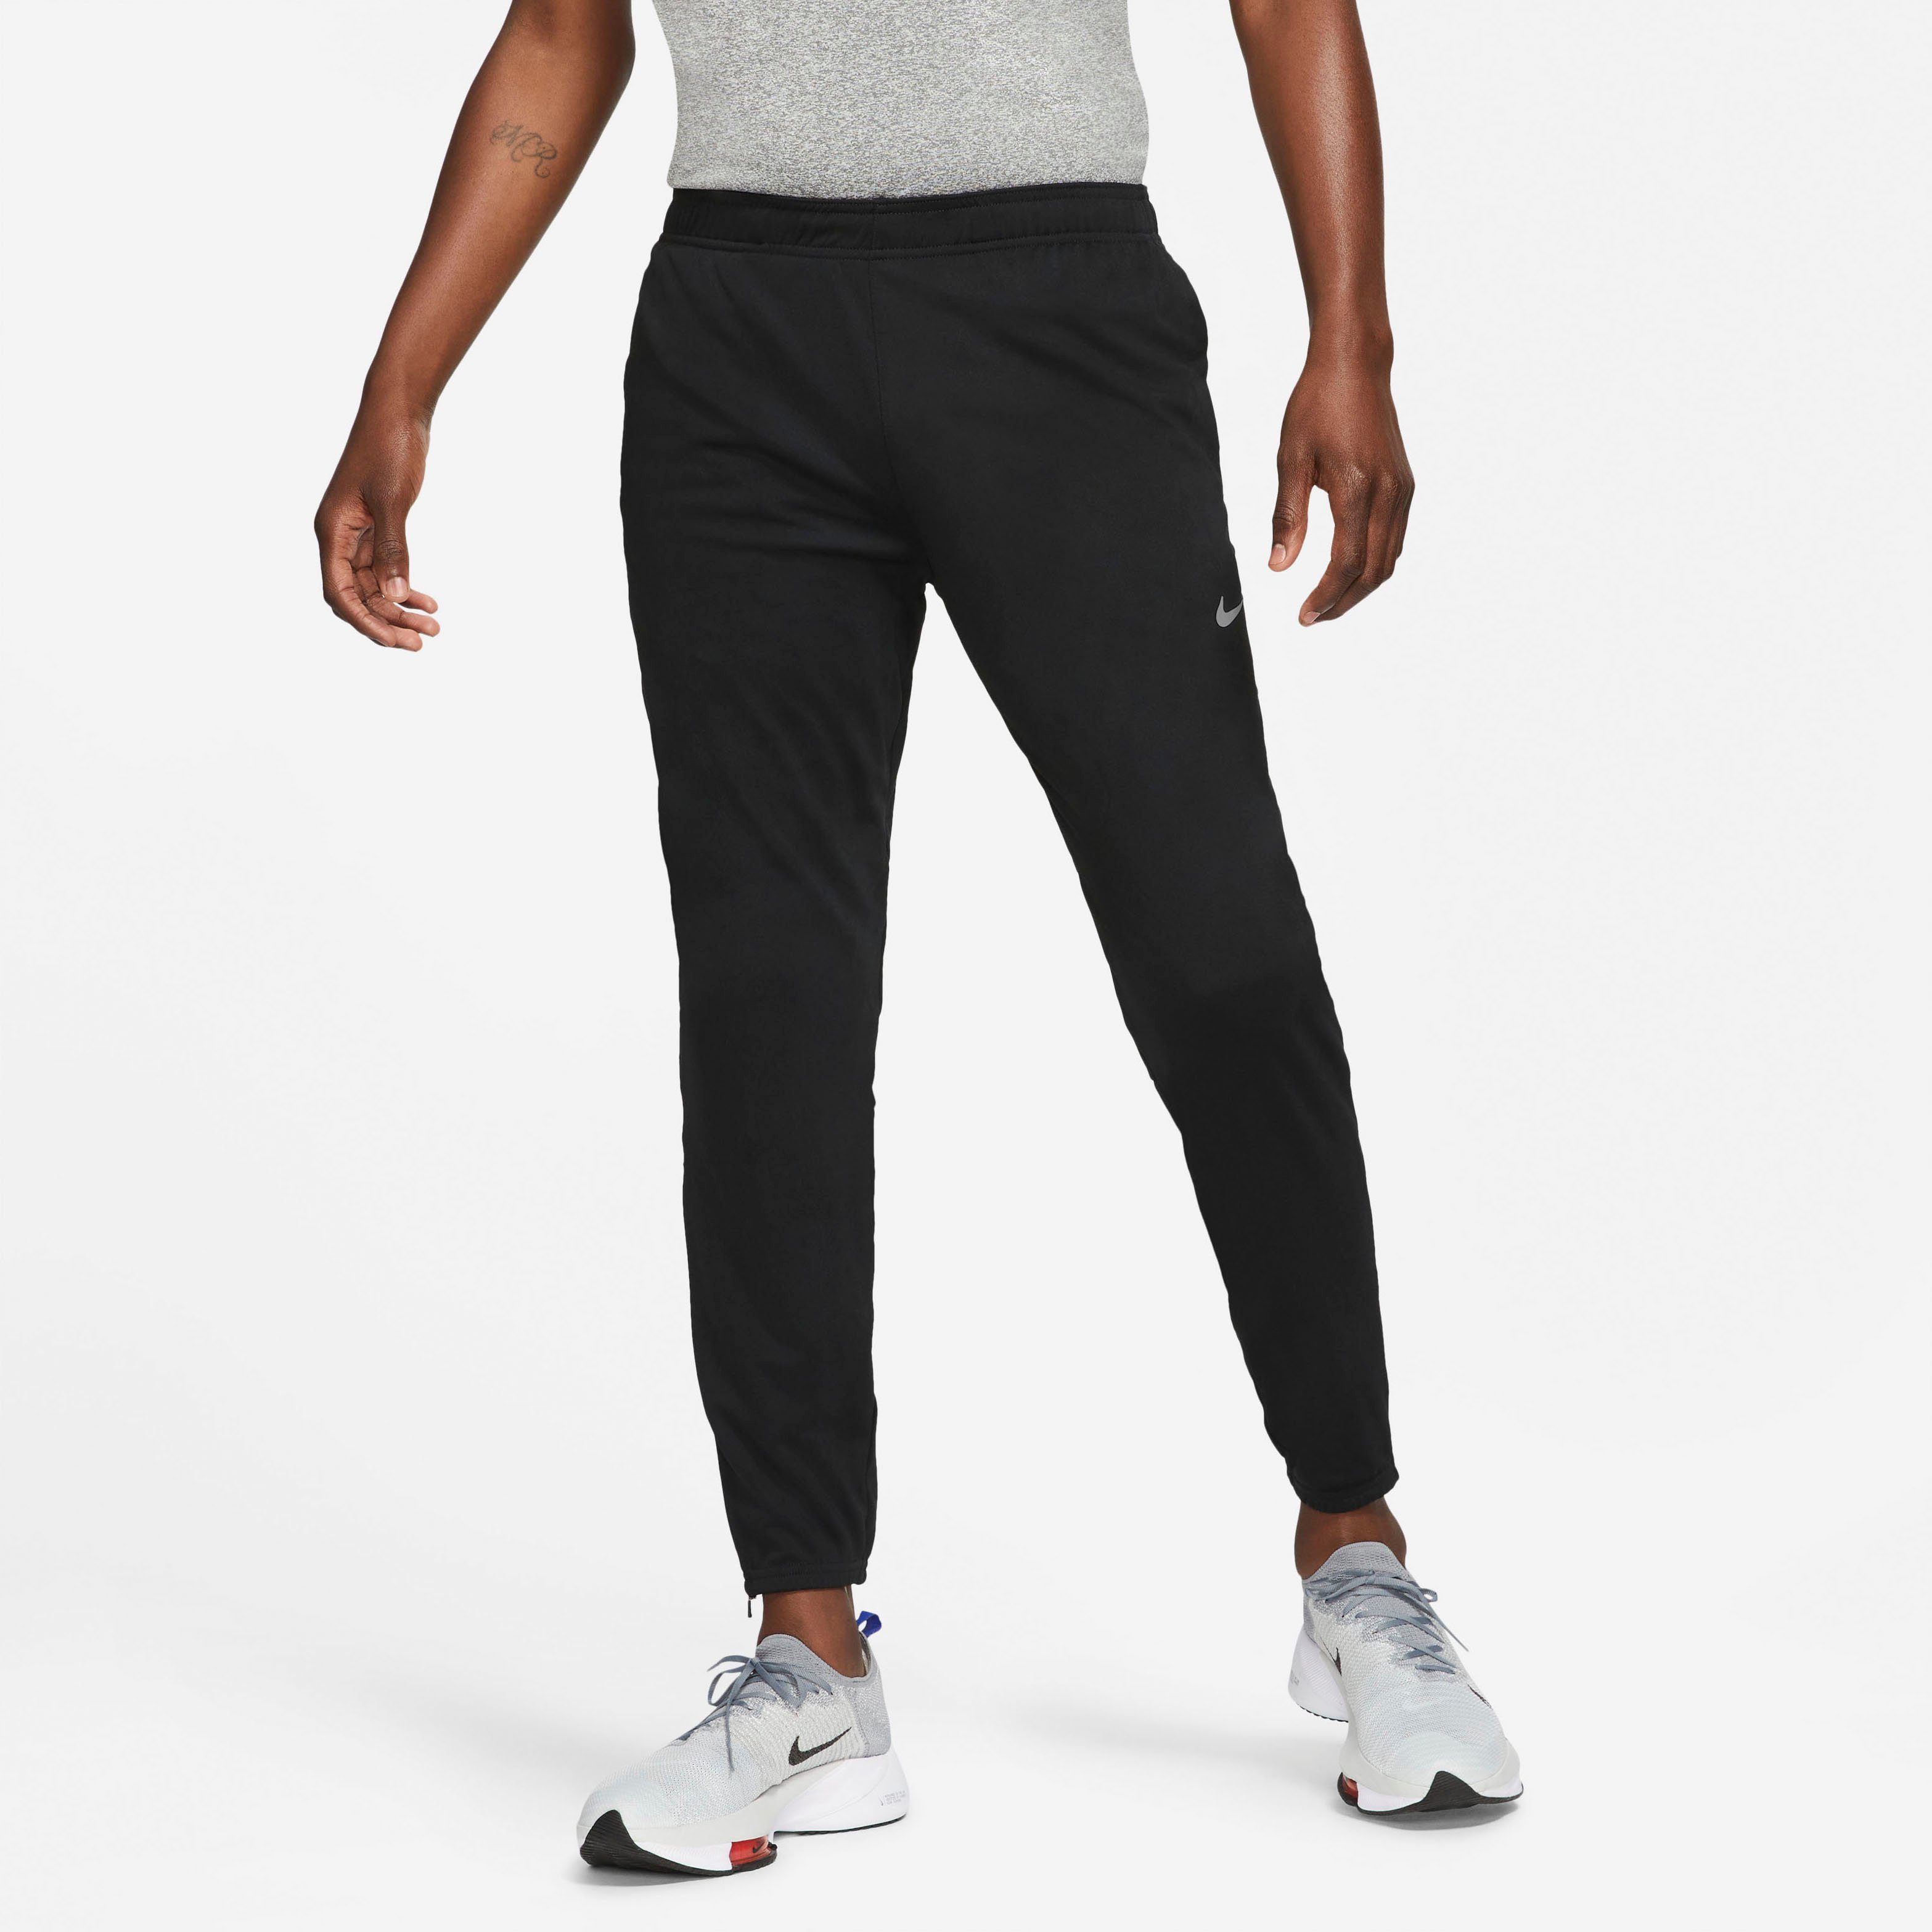 Nike Sporthosen online kaufen | OTTO